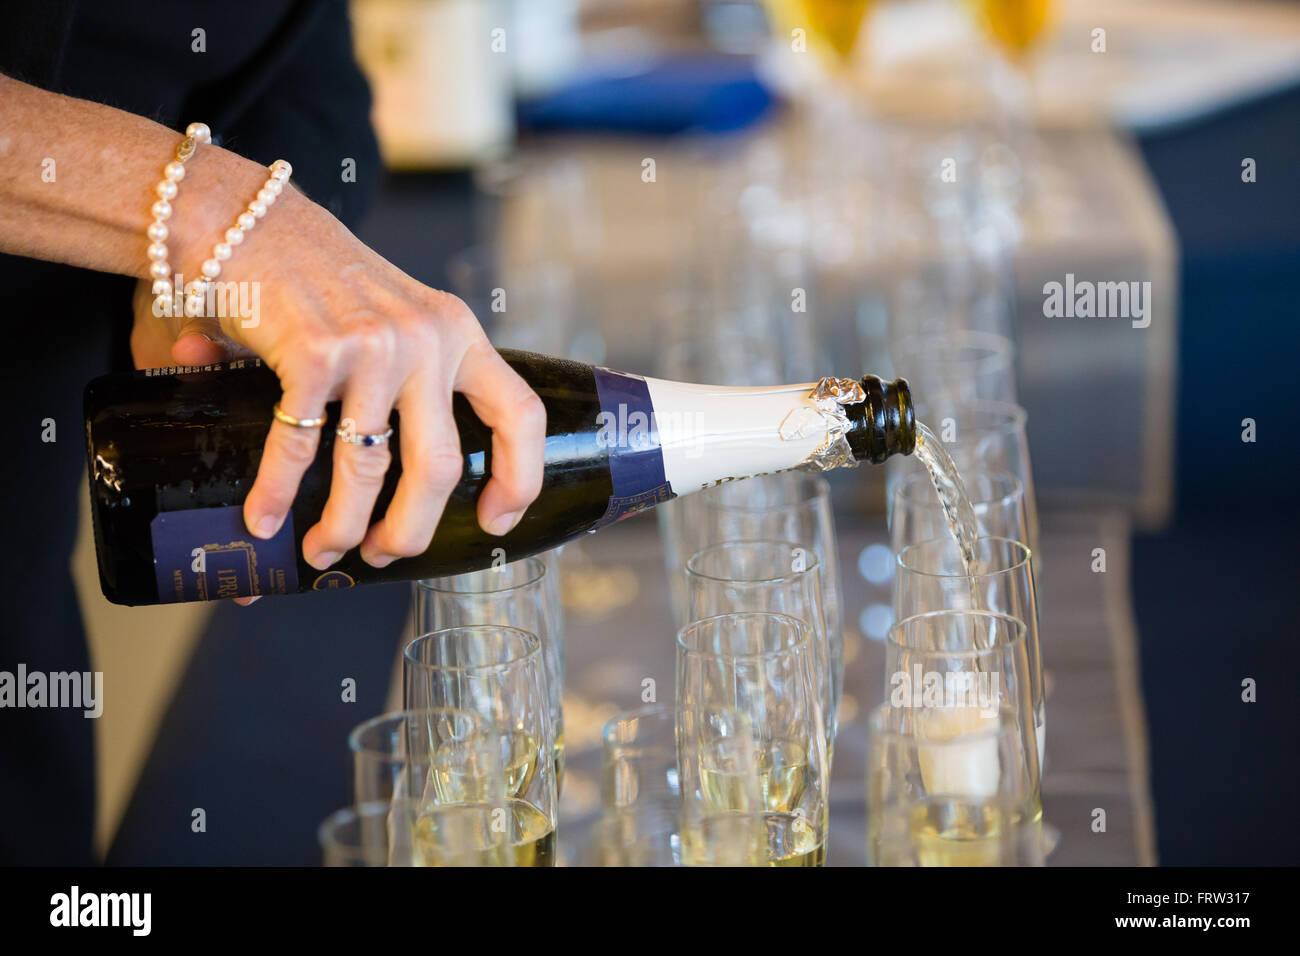 EUGENE, OR - Octubre 3, 2015: Verter champán antes de brindis en una boda para los invitados. Foto de stock